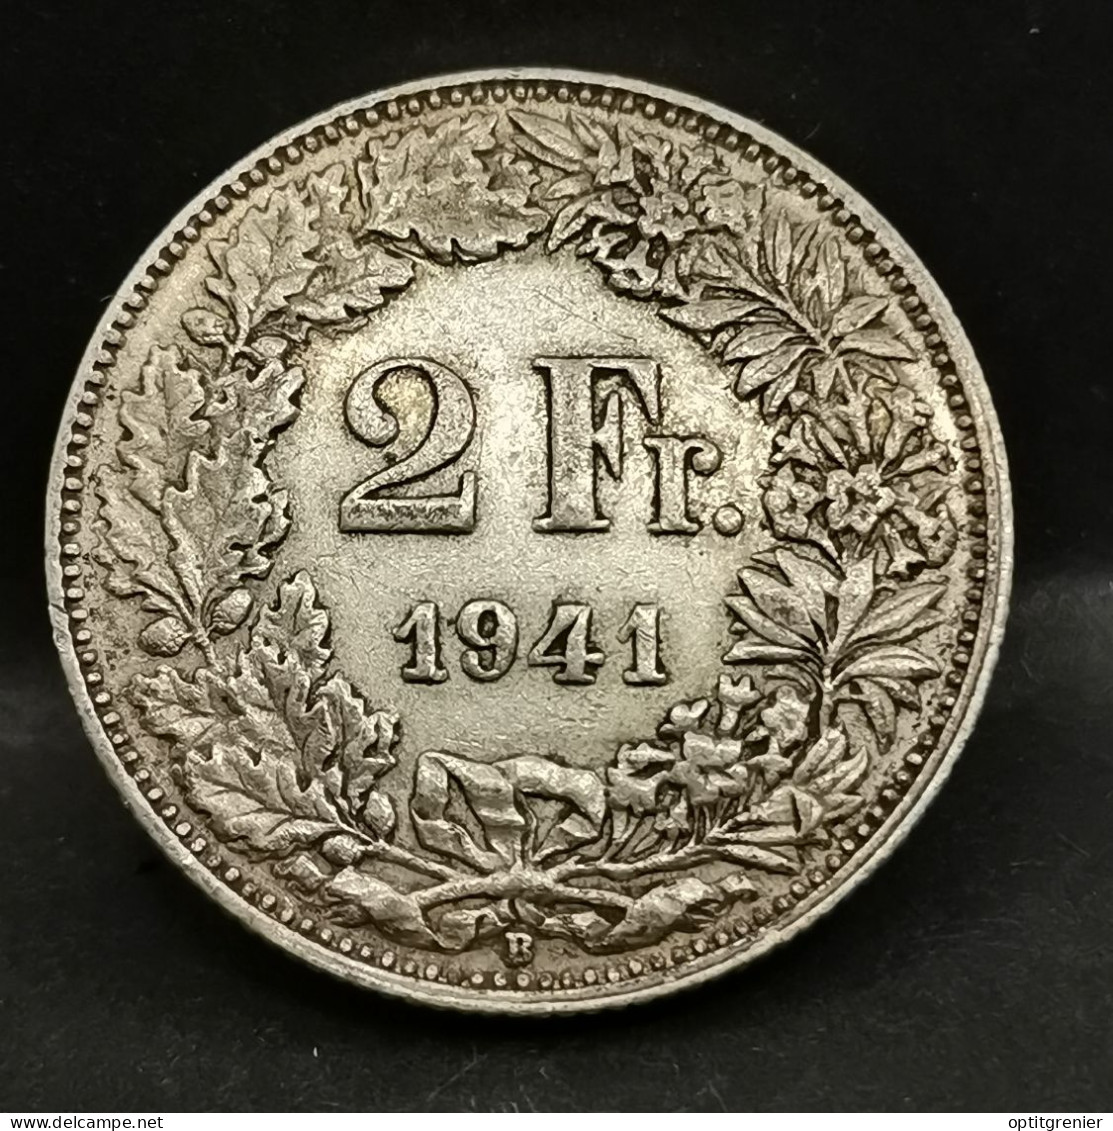 2 FRANCS ARGENT 1941 B BERNE HELVETIA DEBOUT SUISSE / SWITZERLAND SILVER - 1 Franc